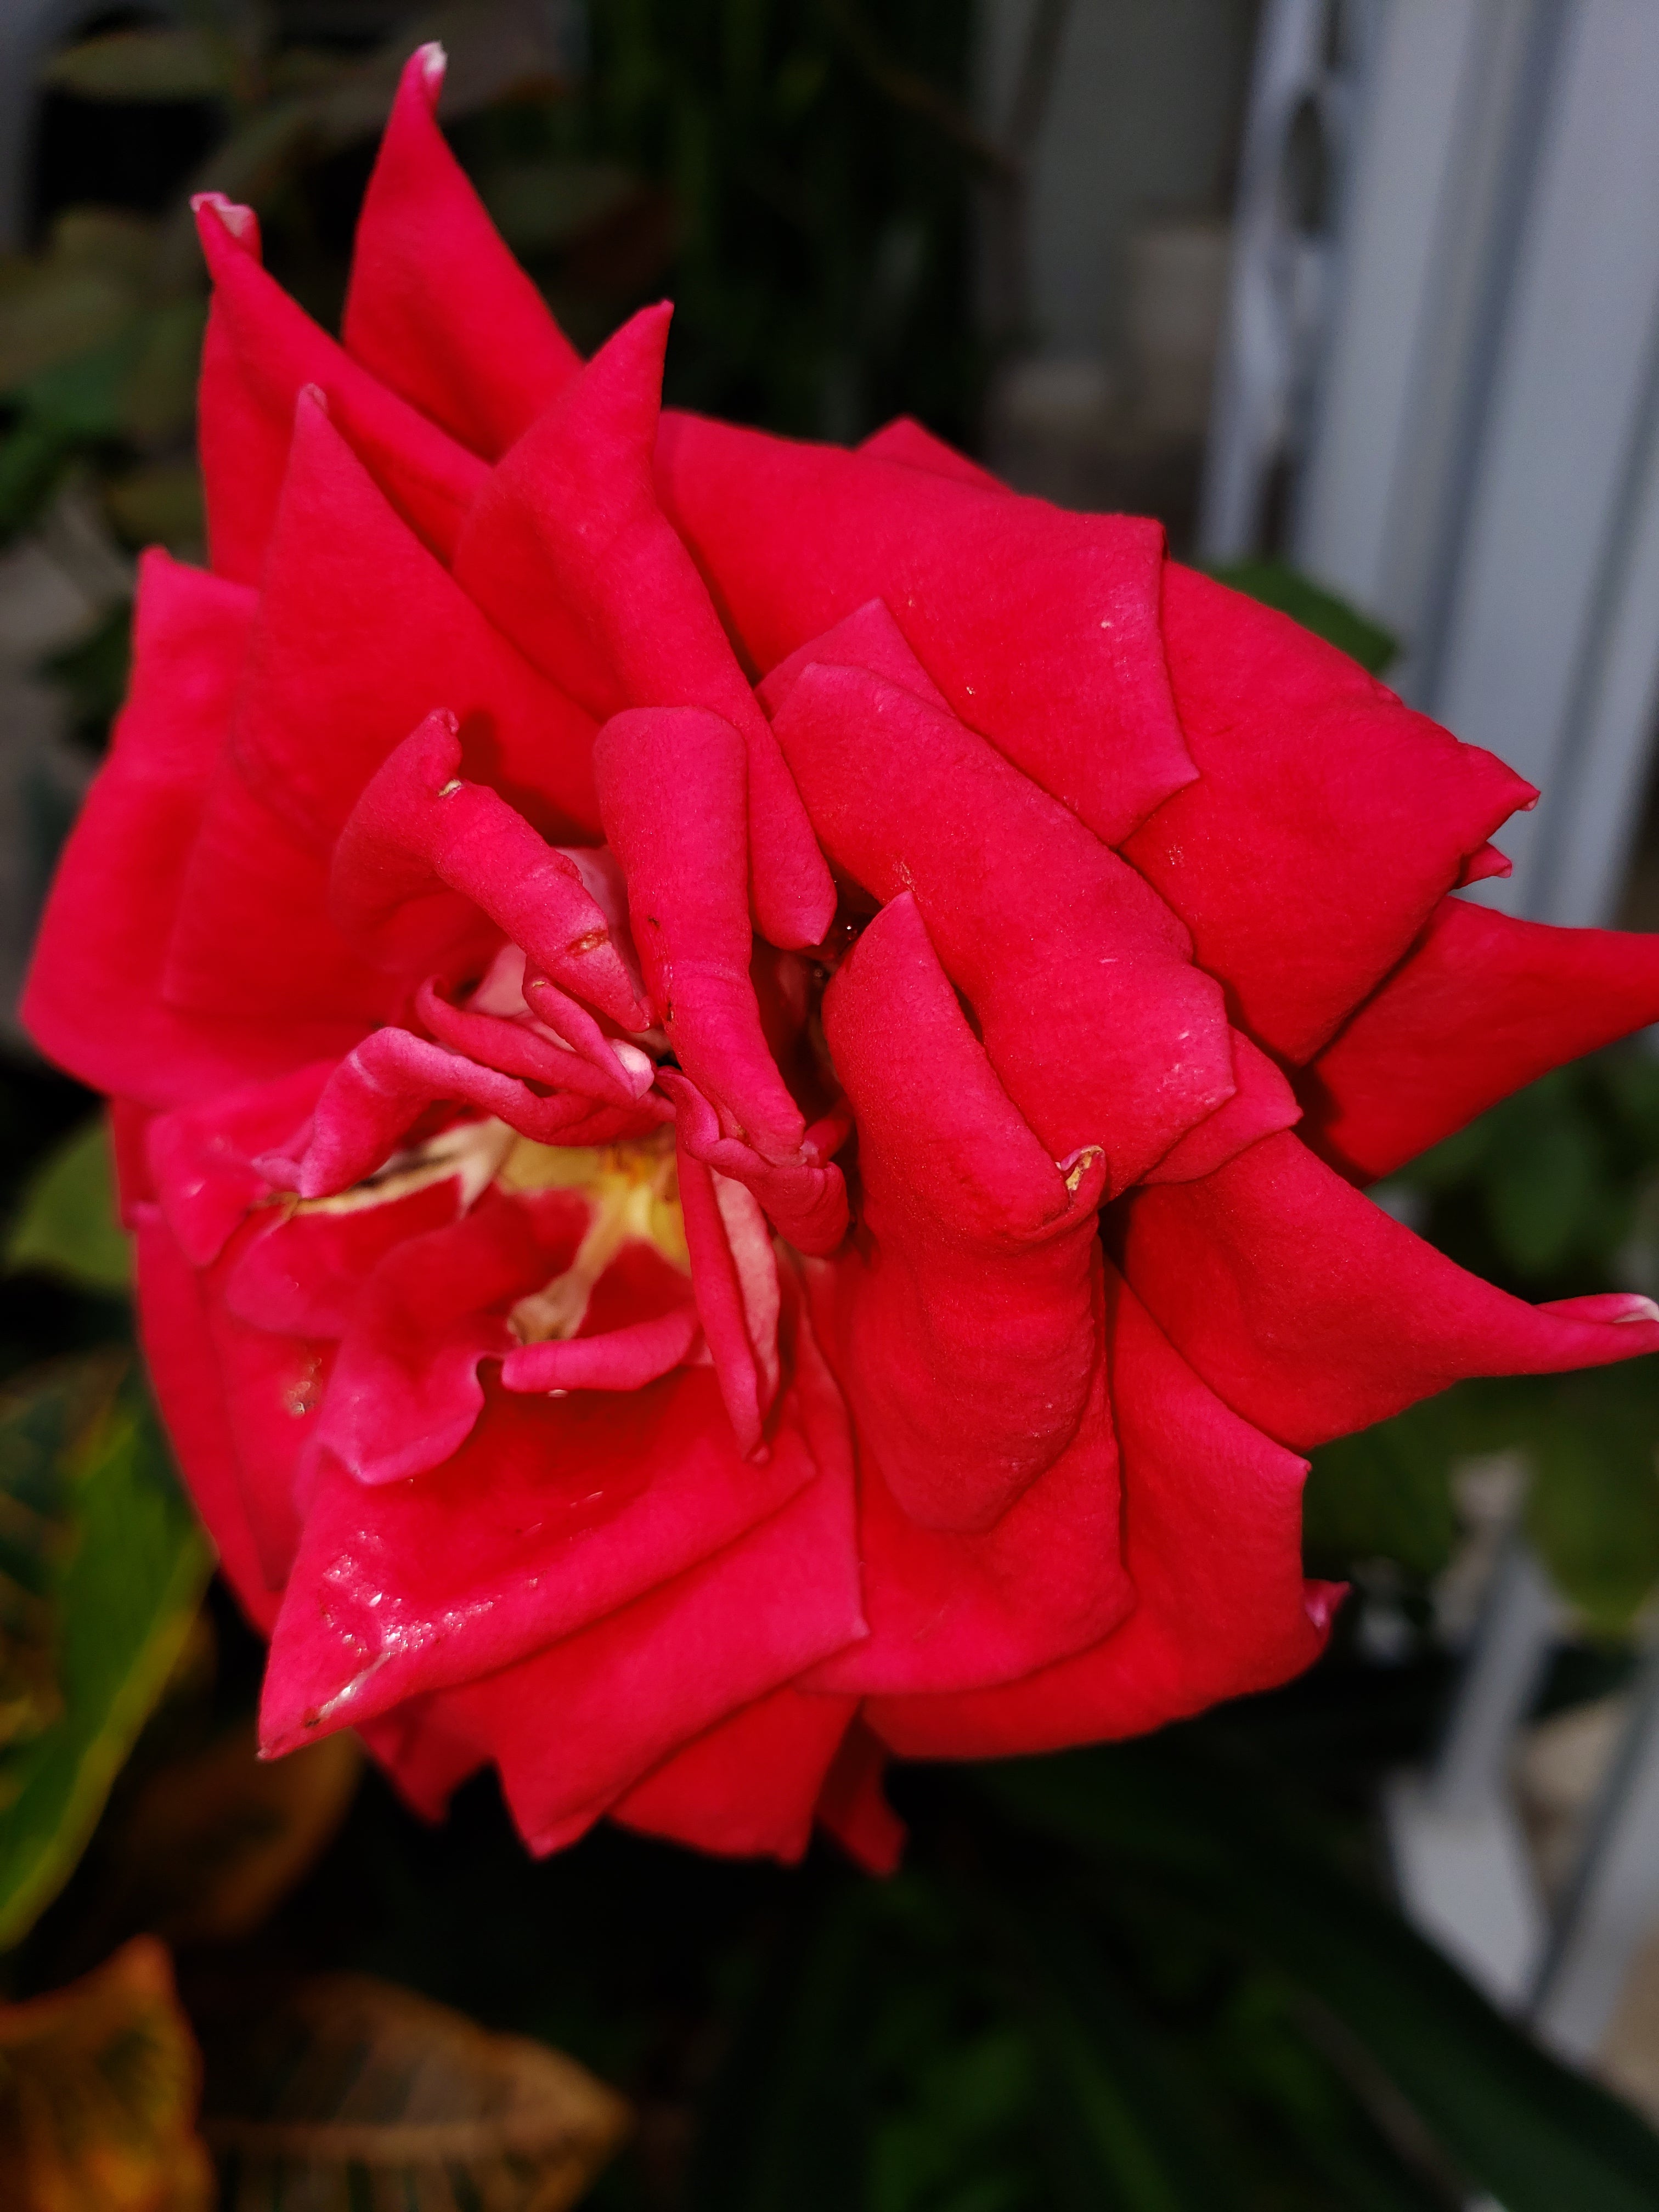 artsy sister, cute roses, red flowers